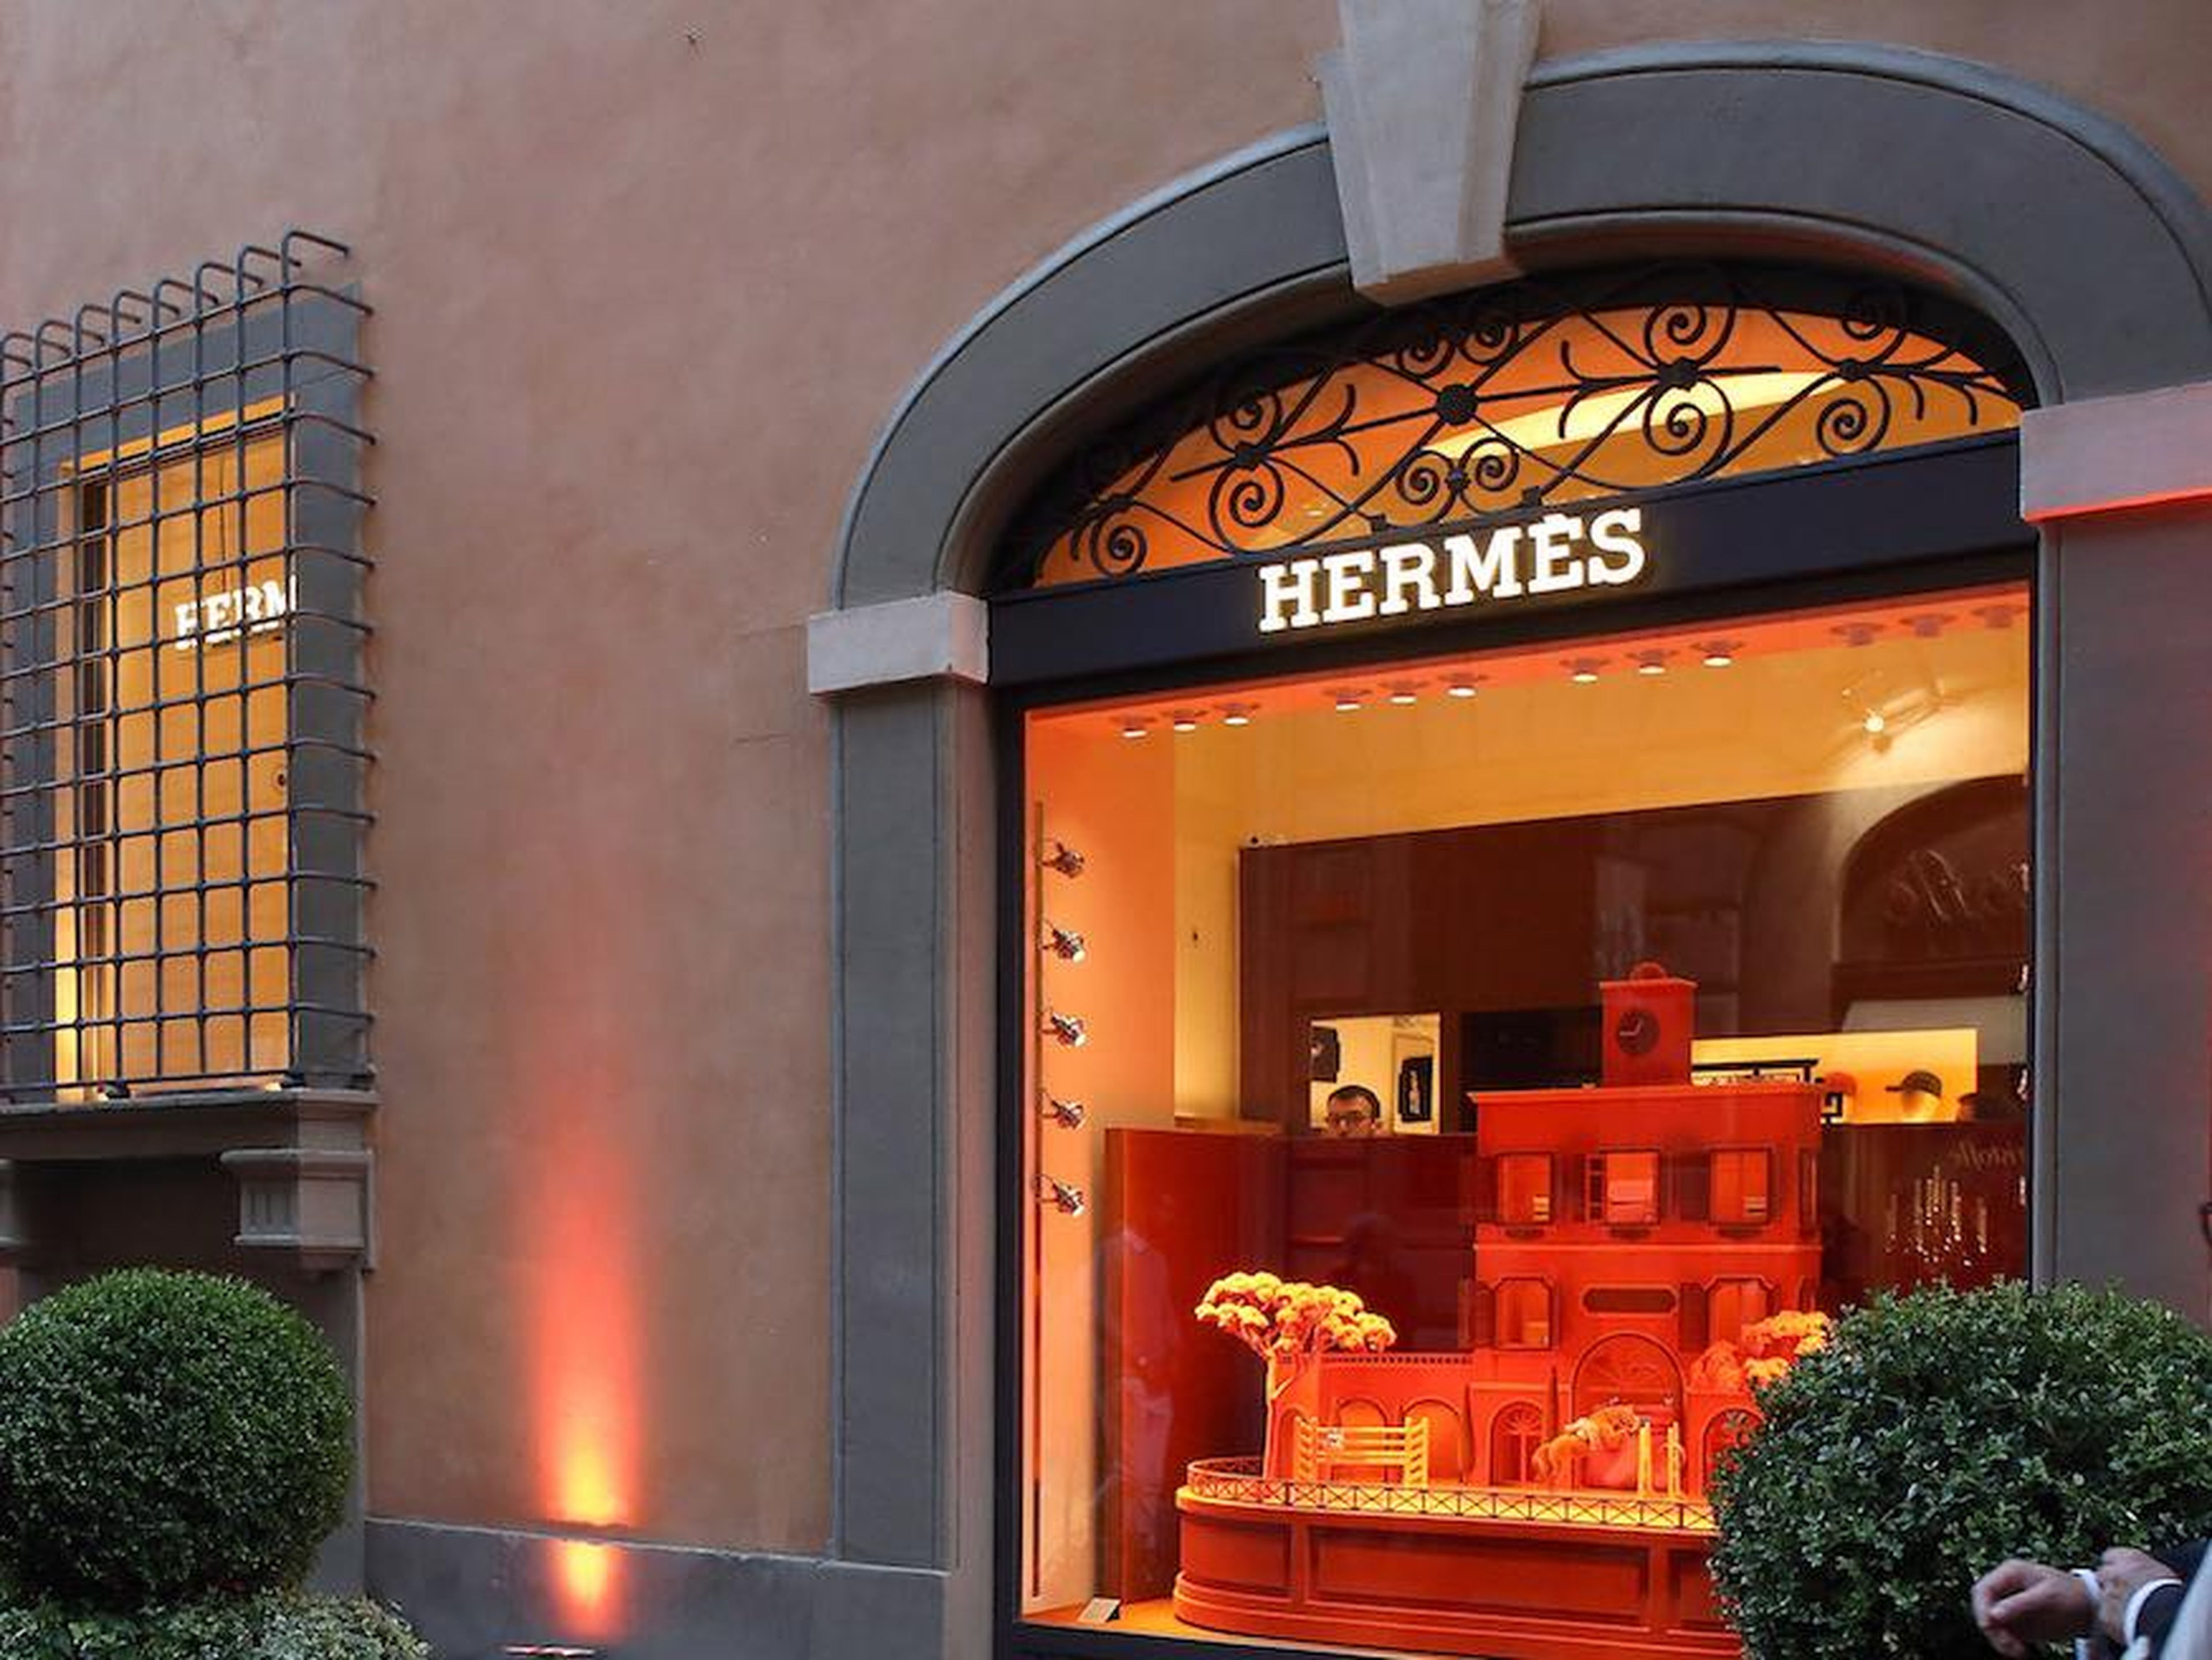 3. Hermès